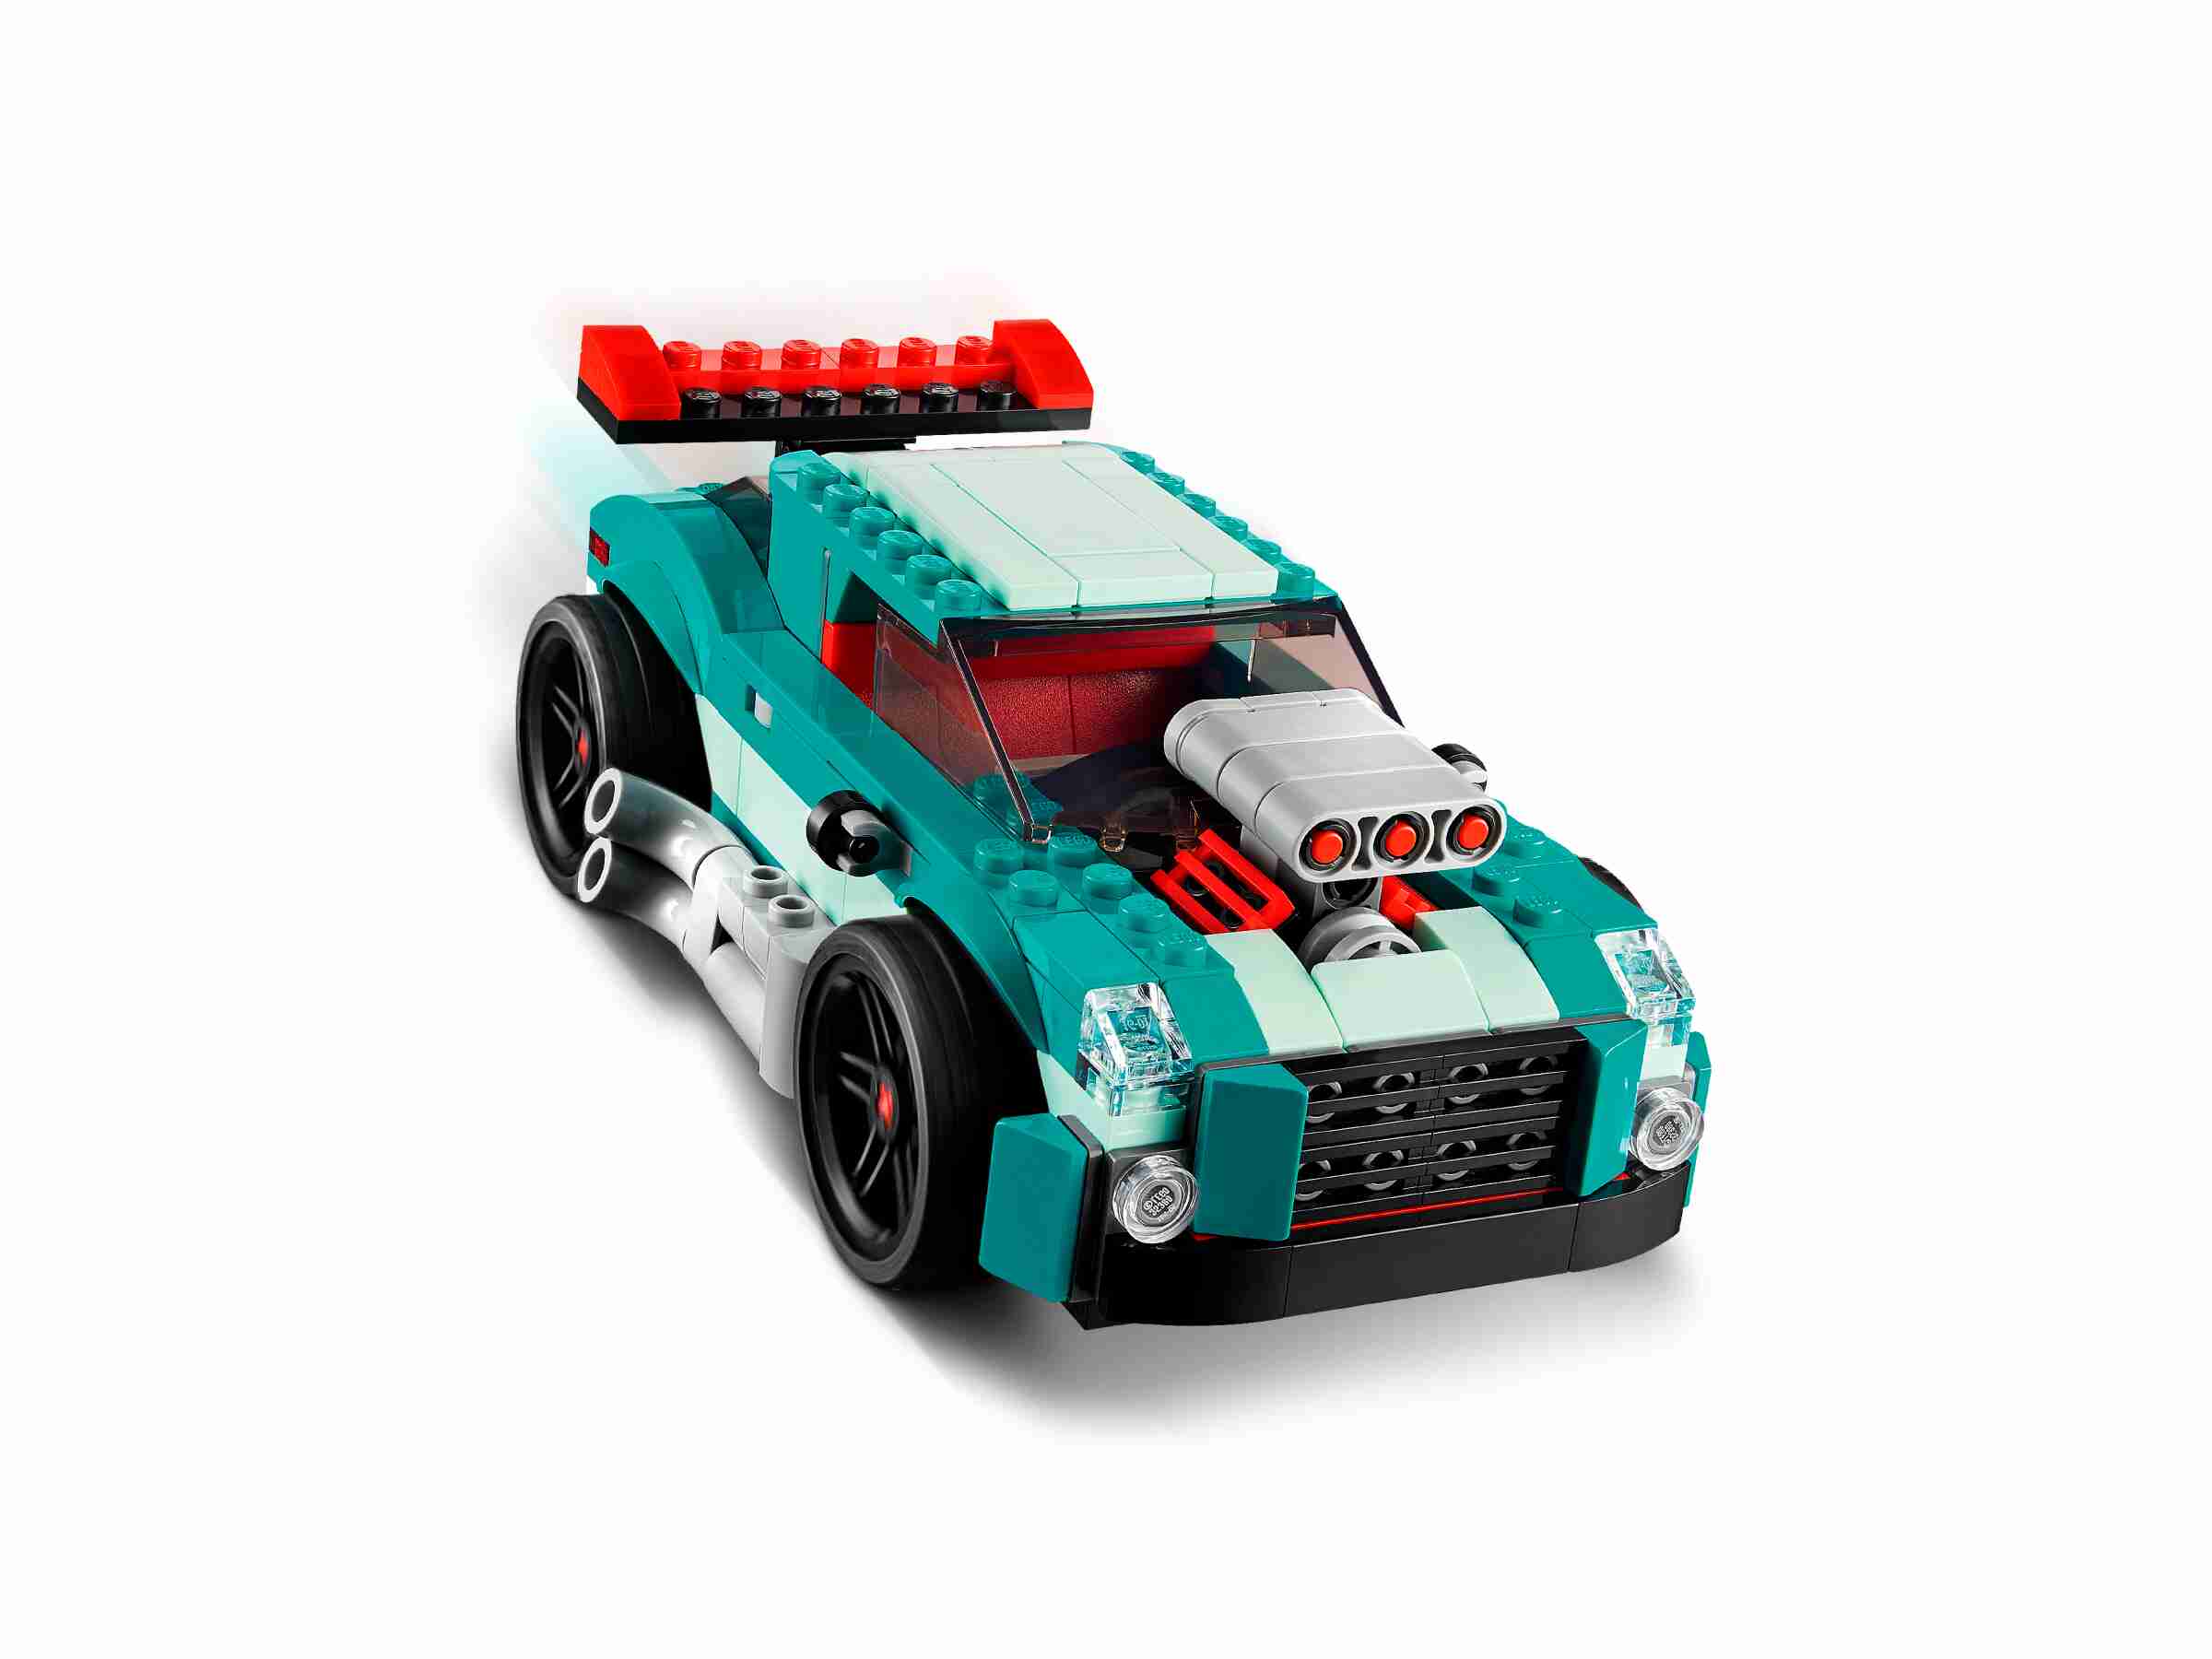 LEGO 31127 Creator 3-in-1 Straßenflitzer, Rennwagen oder Hot  Rod